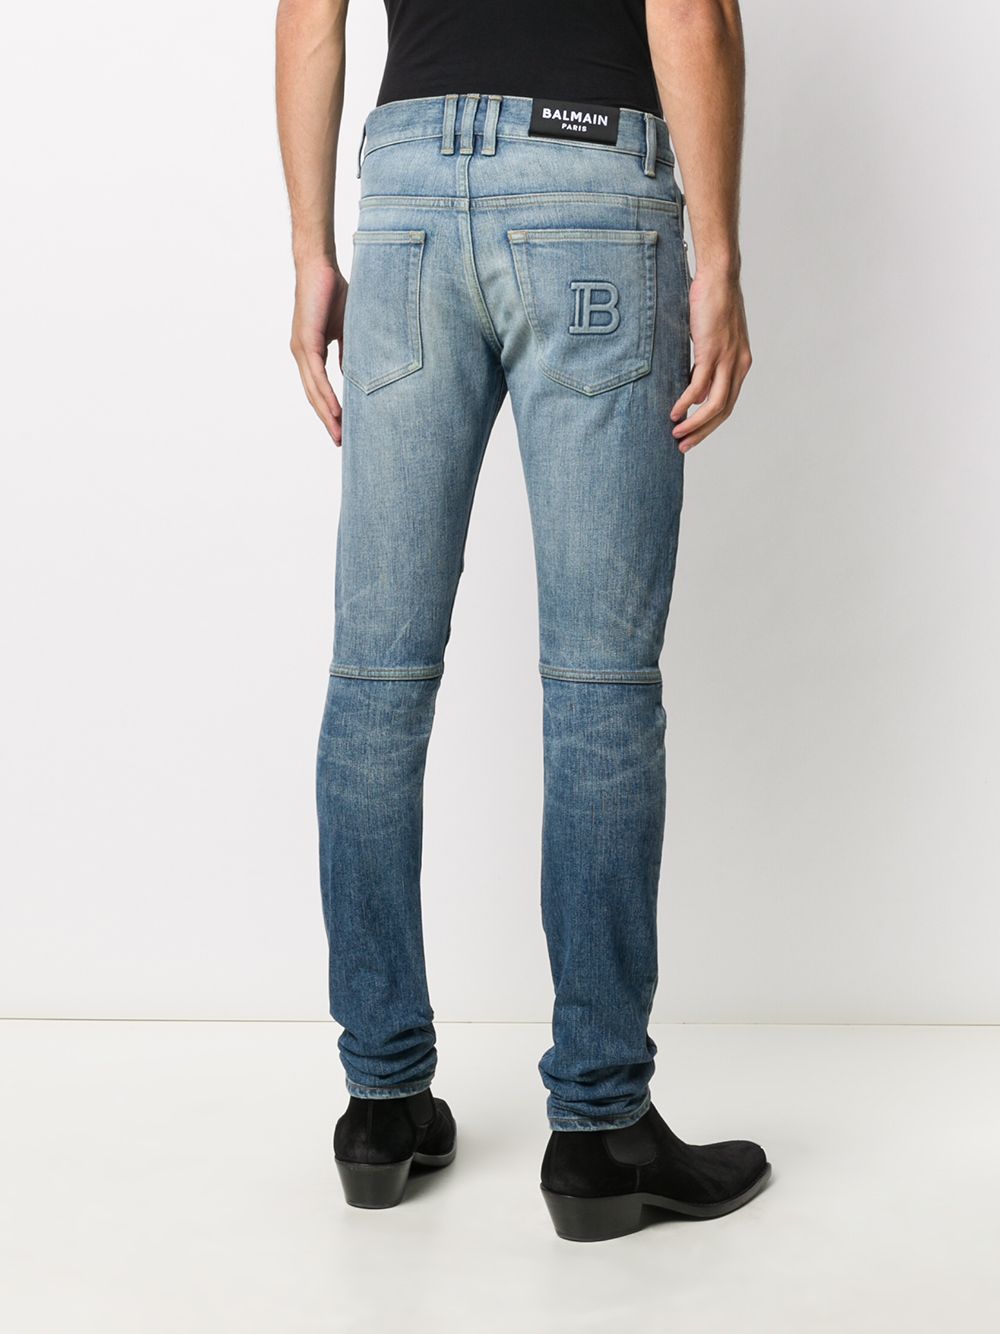 фото Balmain джинсы скинни с тисненым логотипом